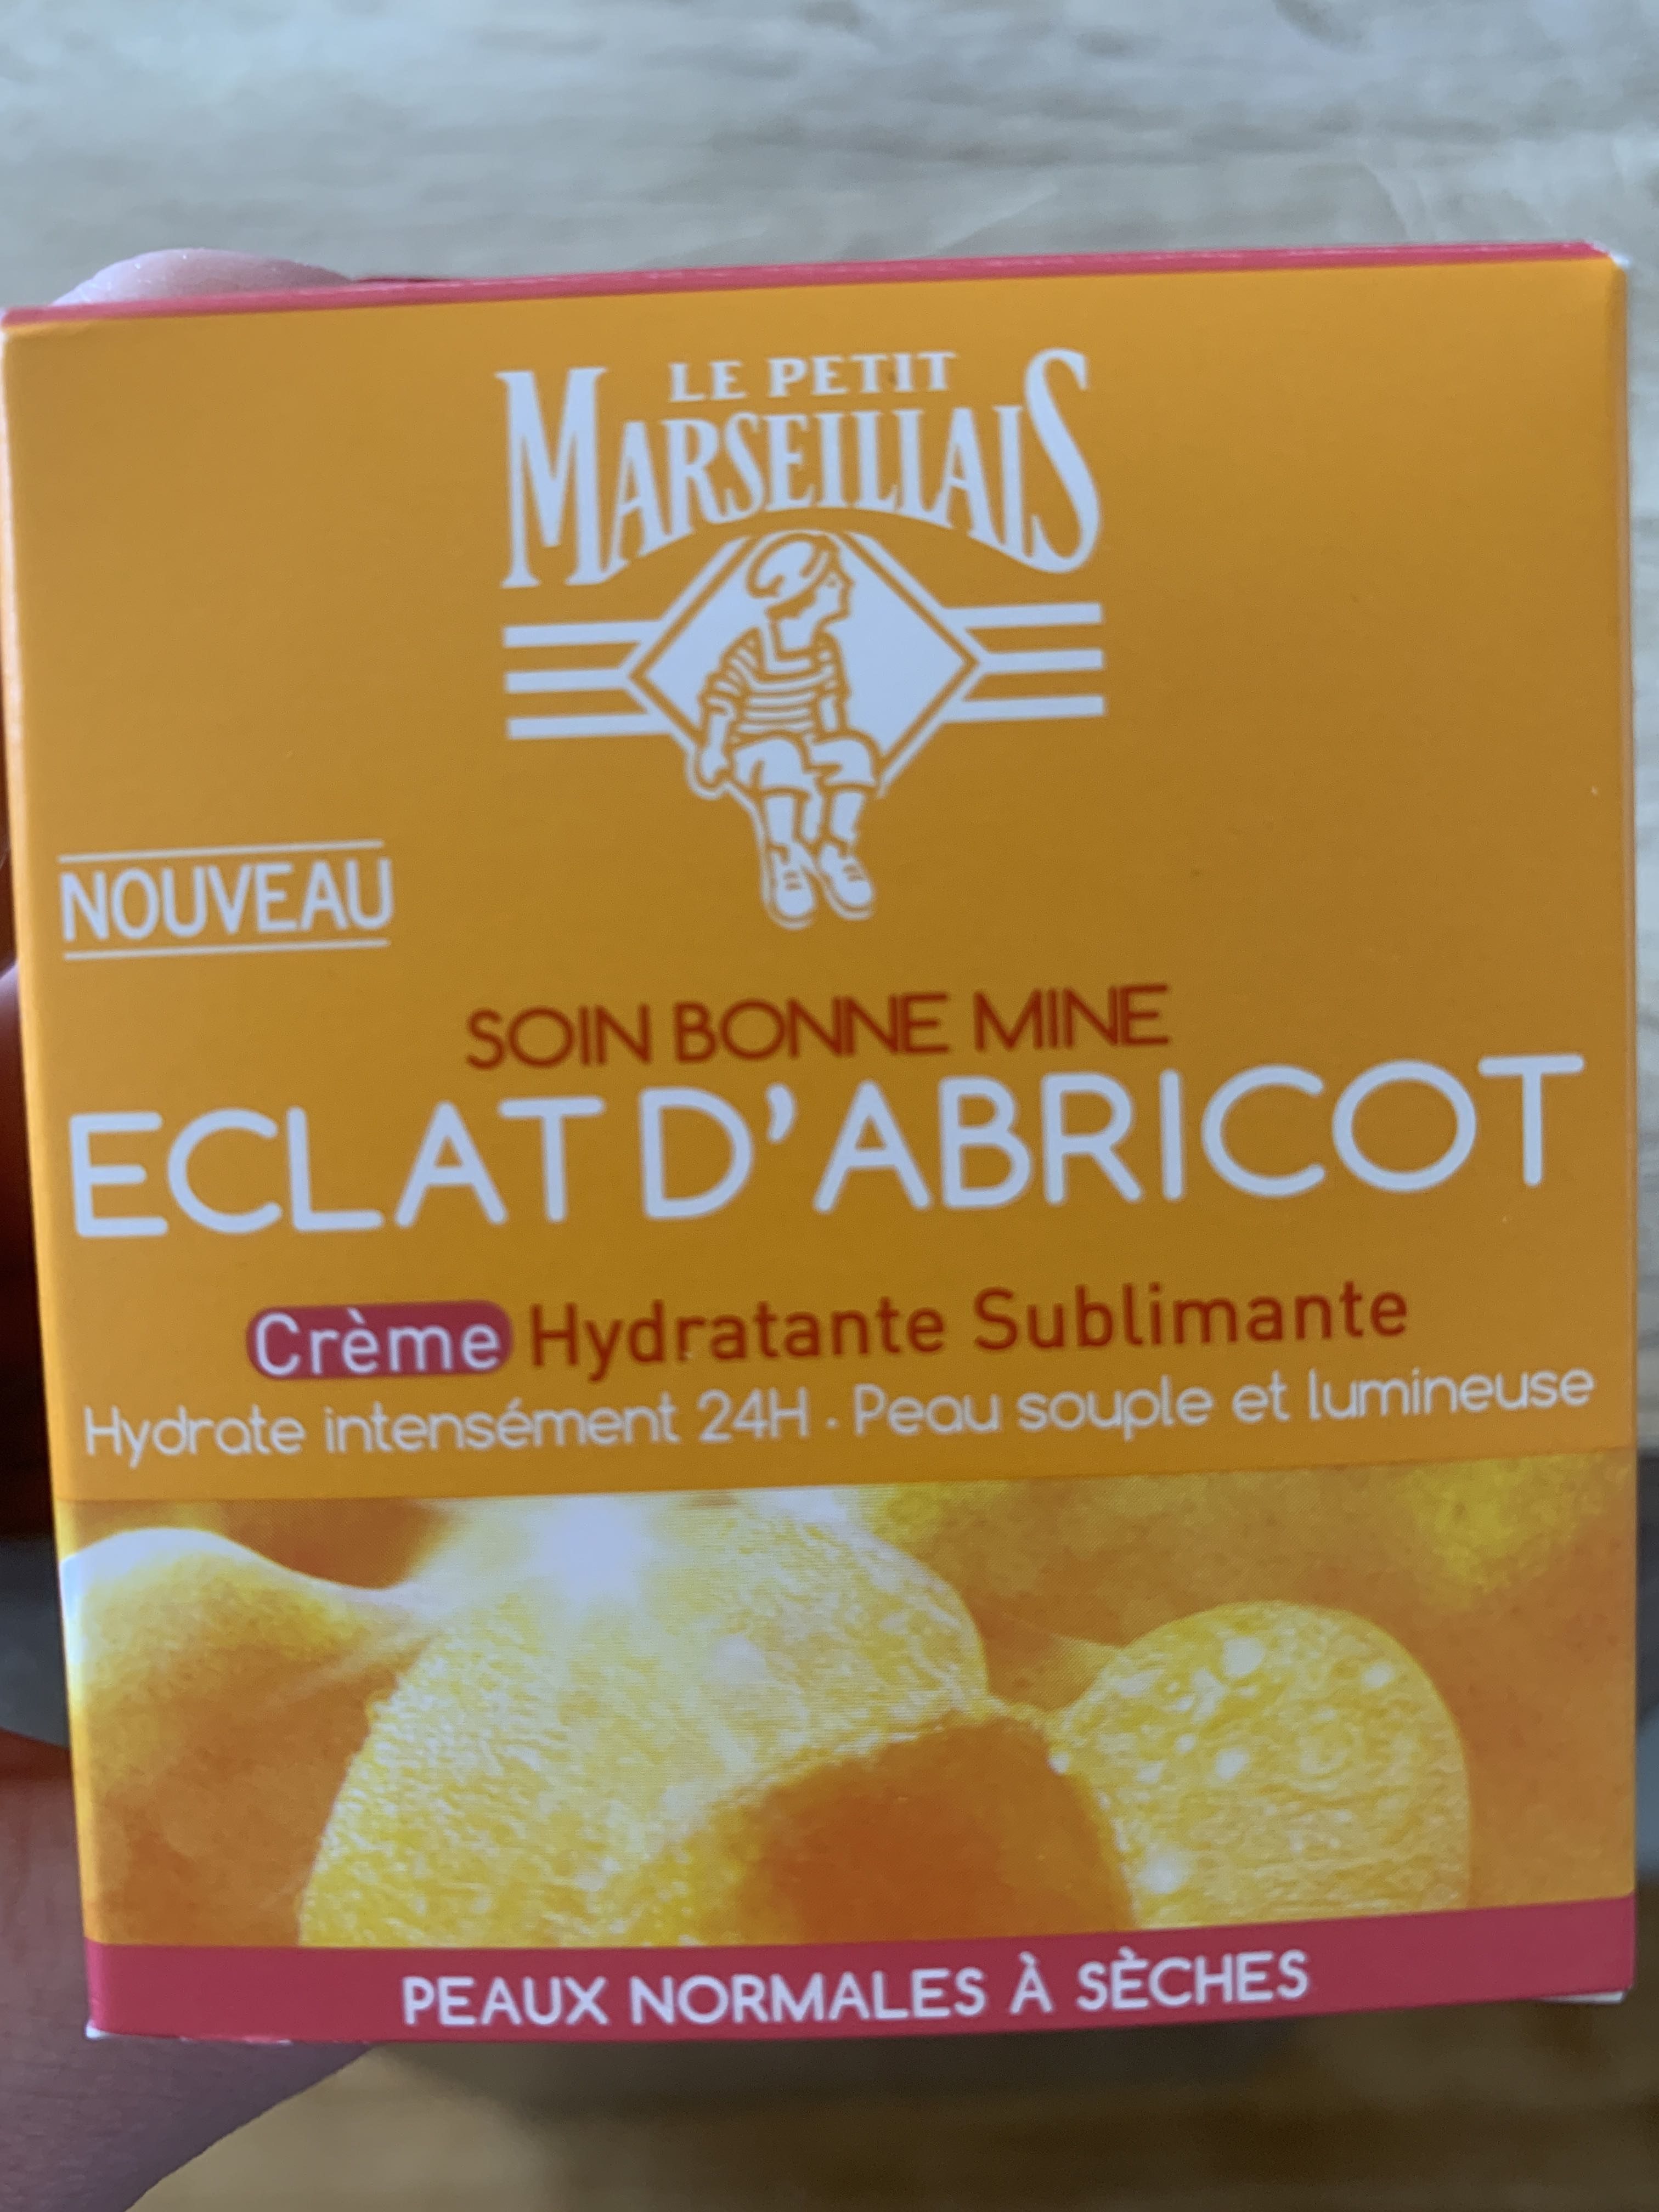 Soin bonne mine éclat d’abricot crème hydratante - Product - fr